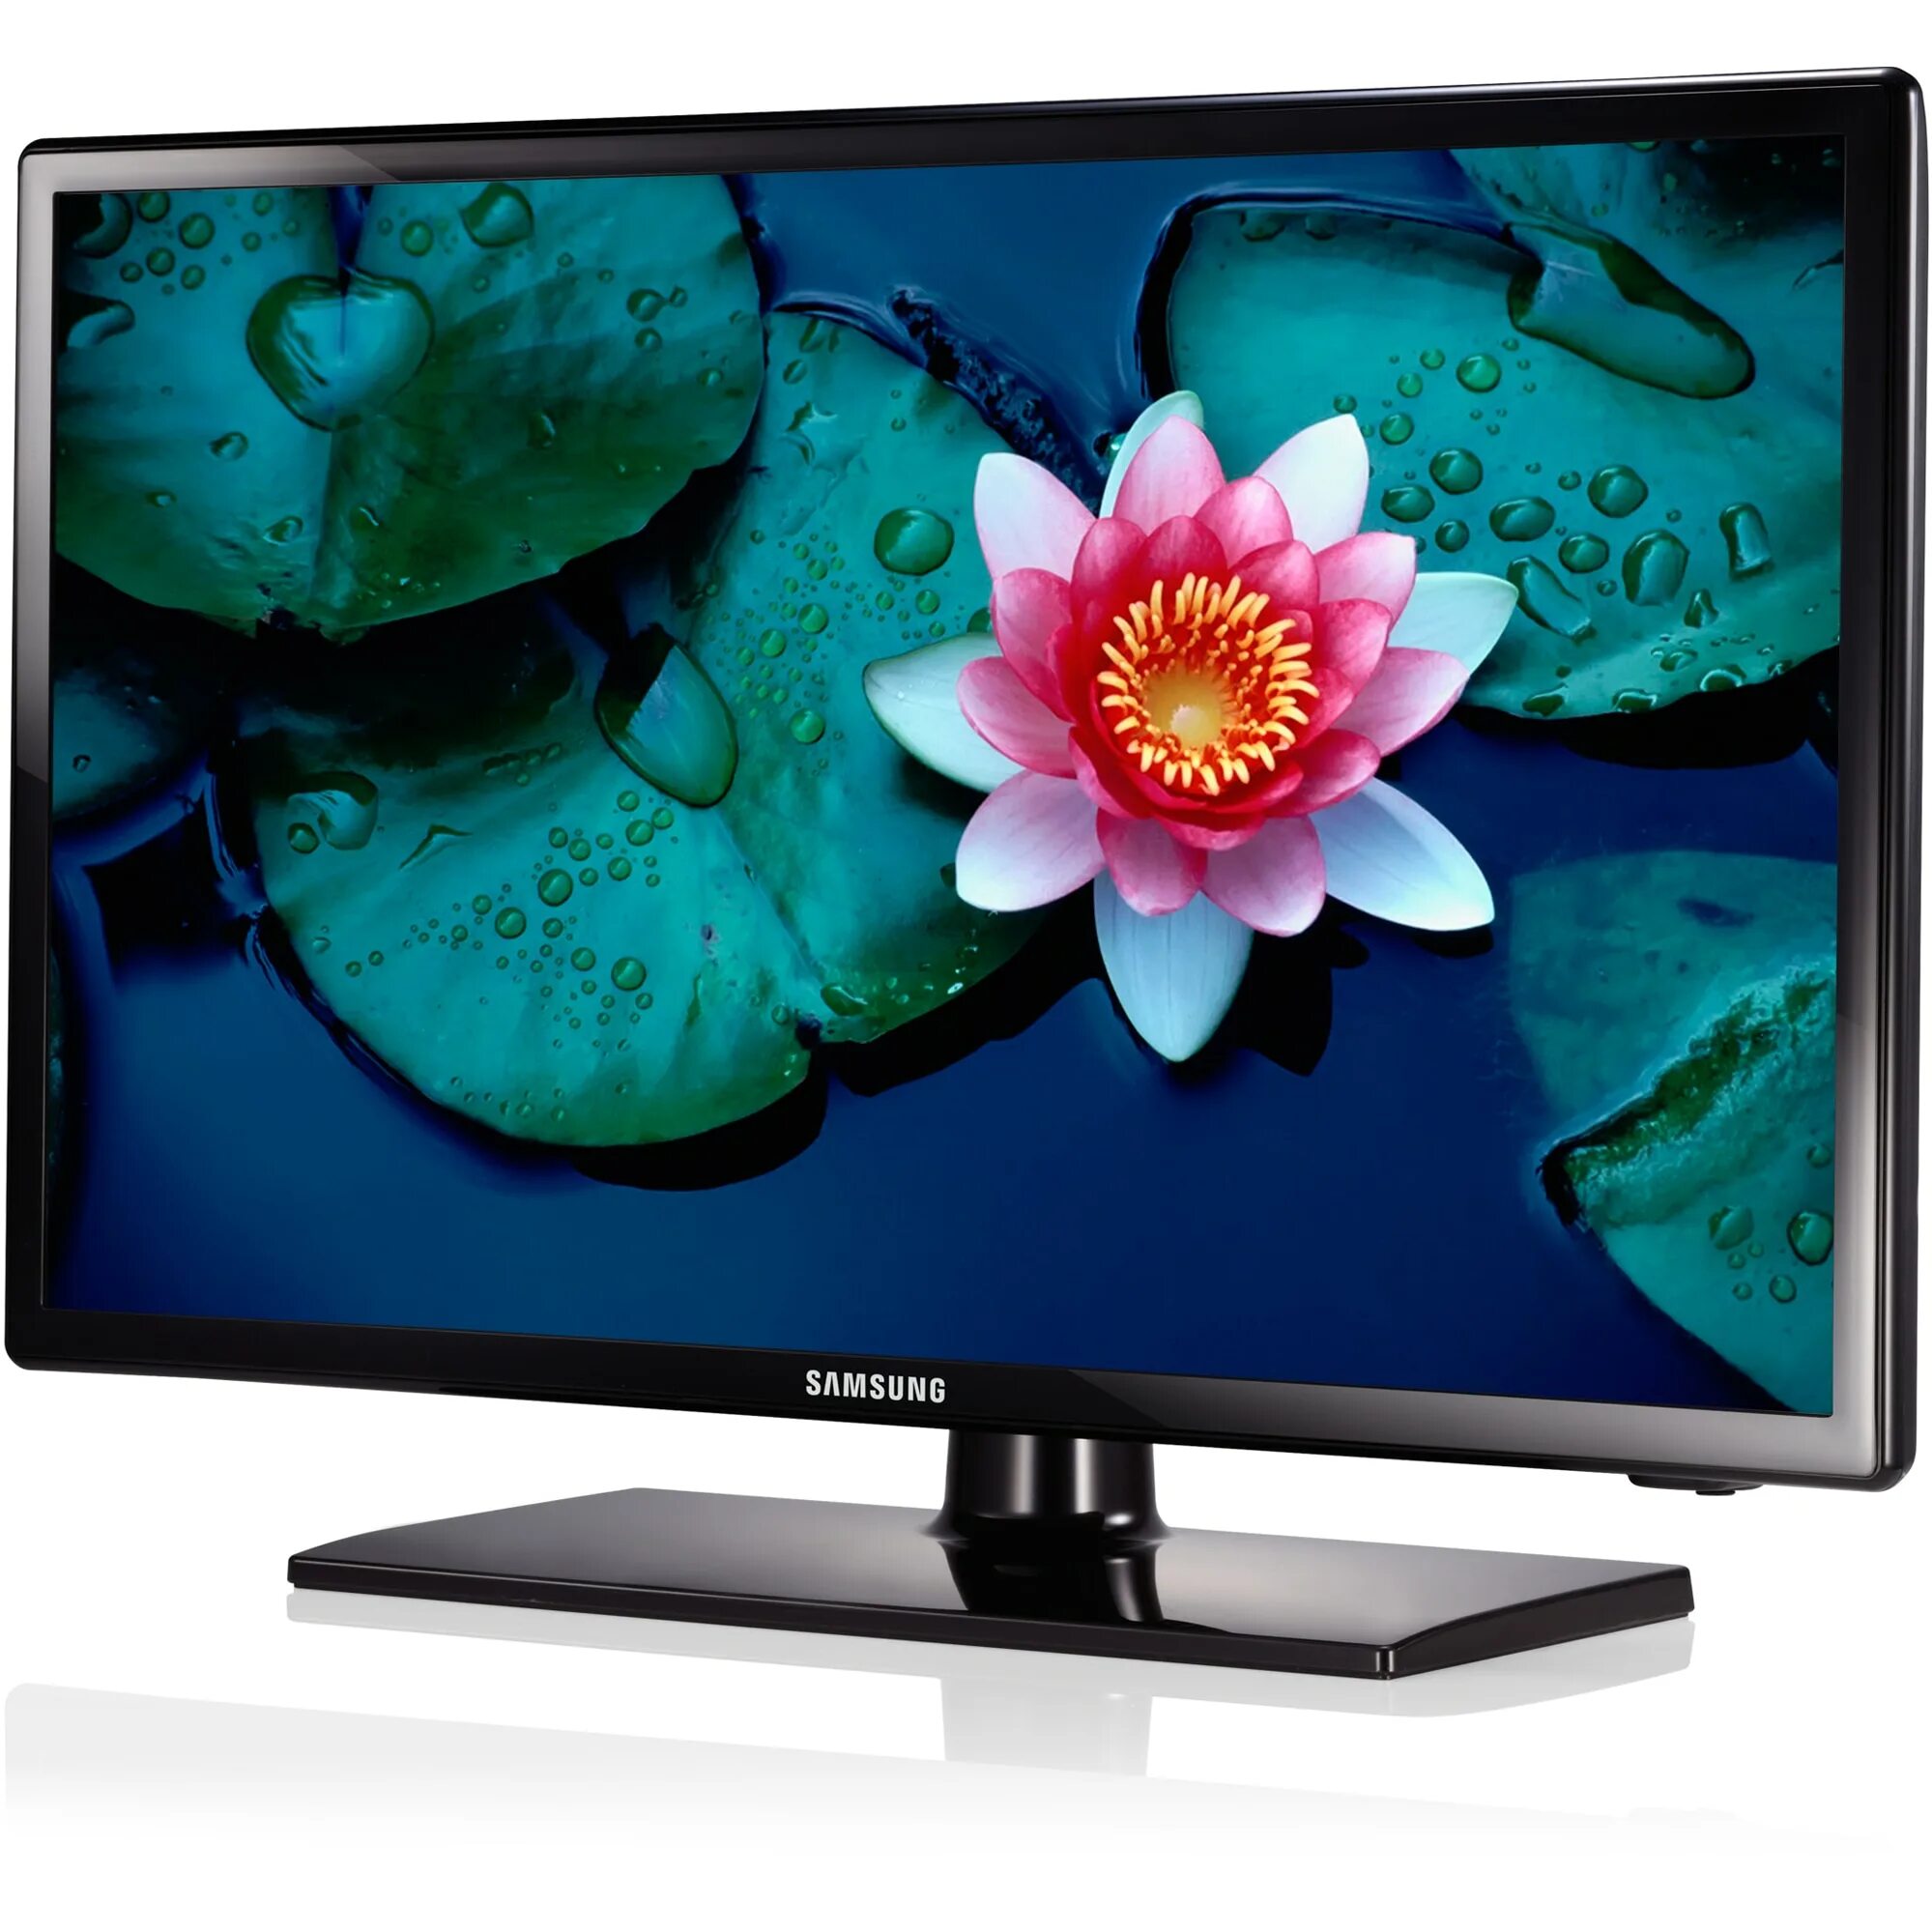 Телевизор купить в новгород недорого. Samsung ue32eh4000. Телевизор самсунг ue32eh4000w. Самсунг led ue32eh4000w. Телевизор самсунг модель ue32eh4000w.